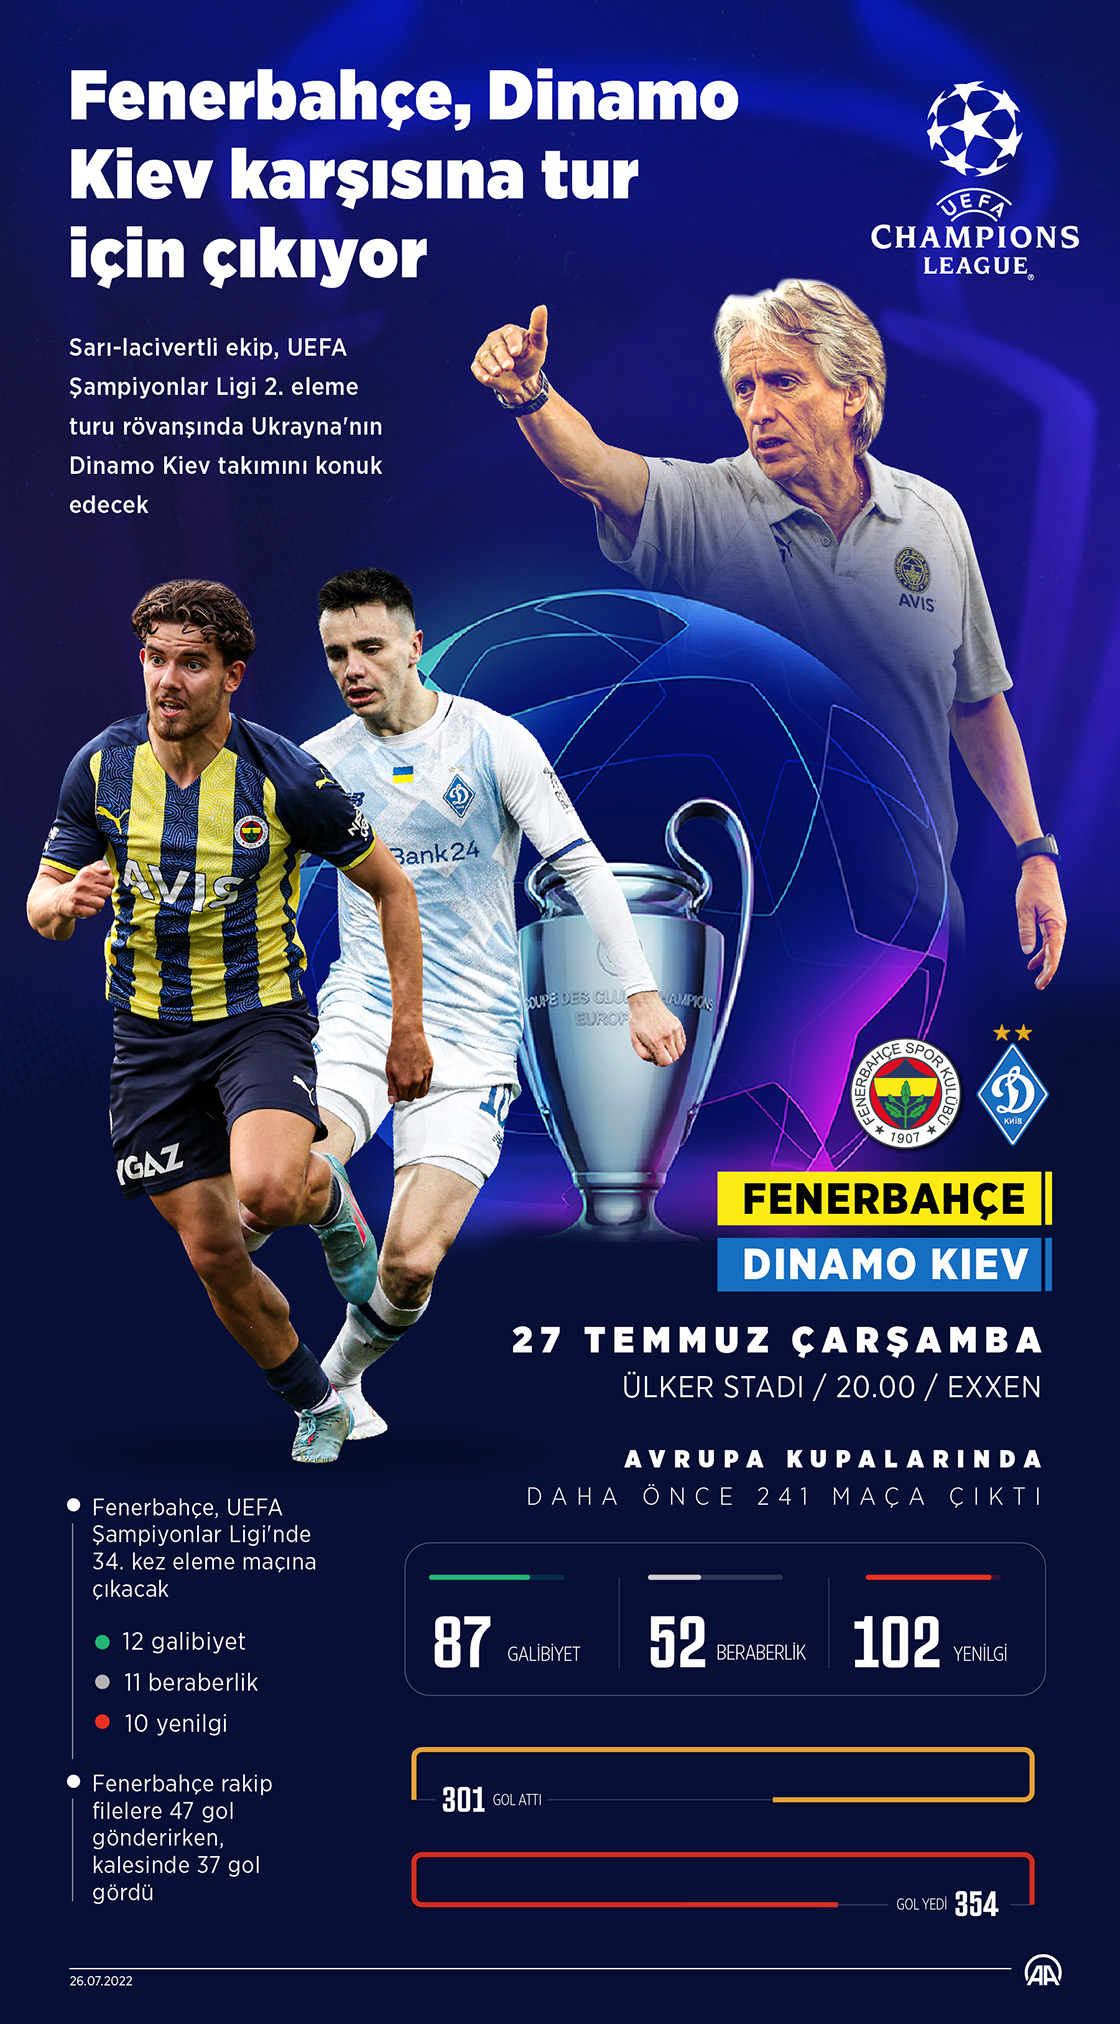 Fenerbahçe, Avrupa kupalarında 242. maçına Dinamo Kiev karşısında çıkacak